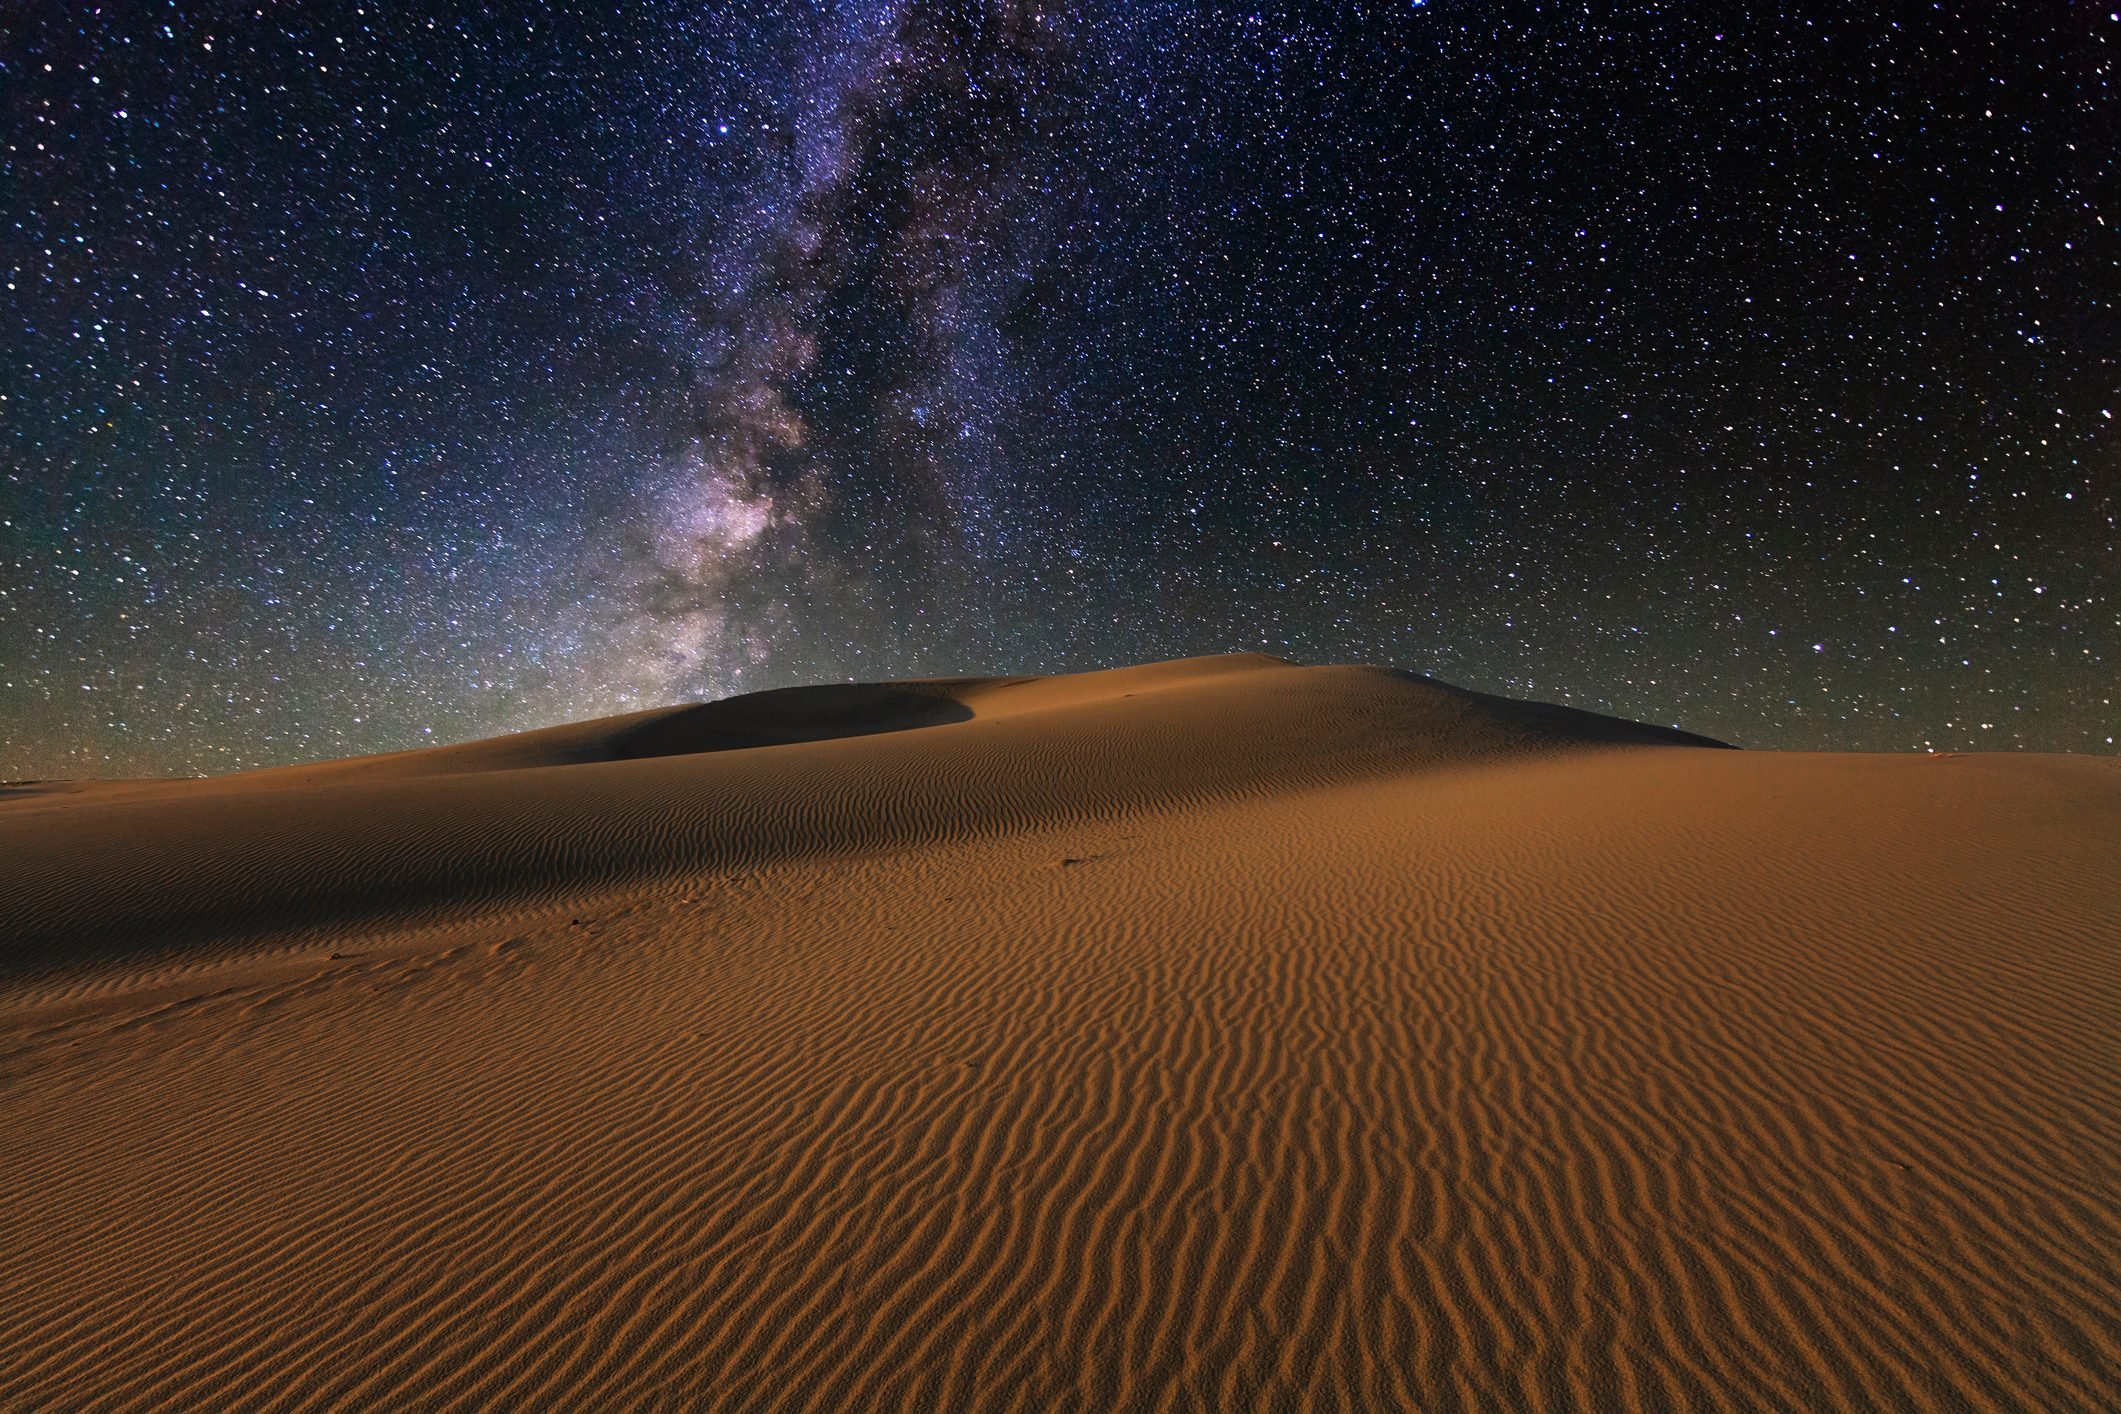 Starry Sky over the sand dunes of the Gobi Desert, Mongolia